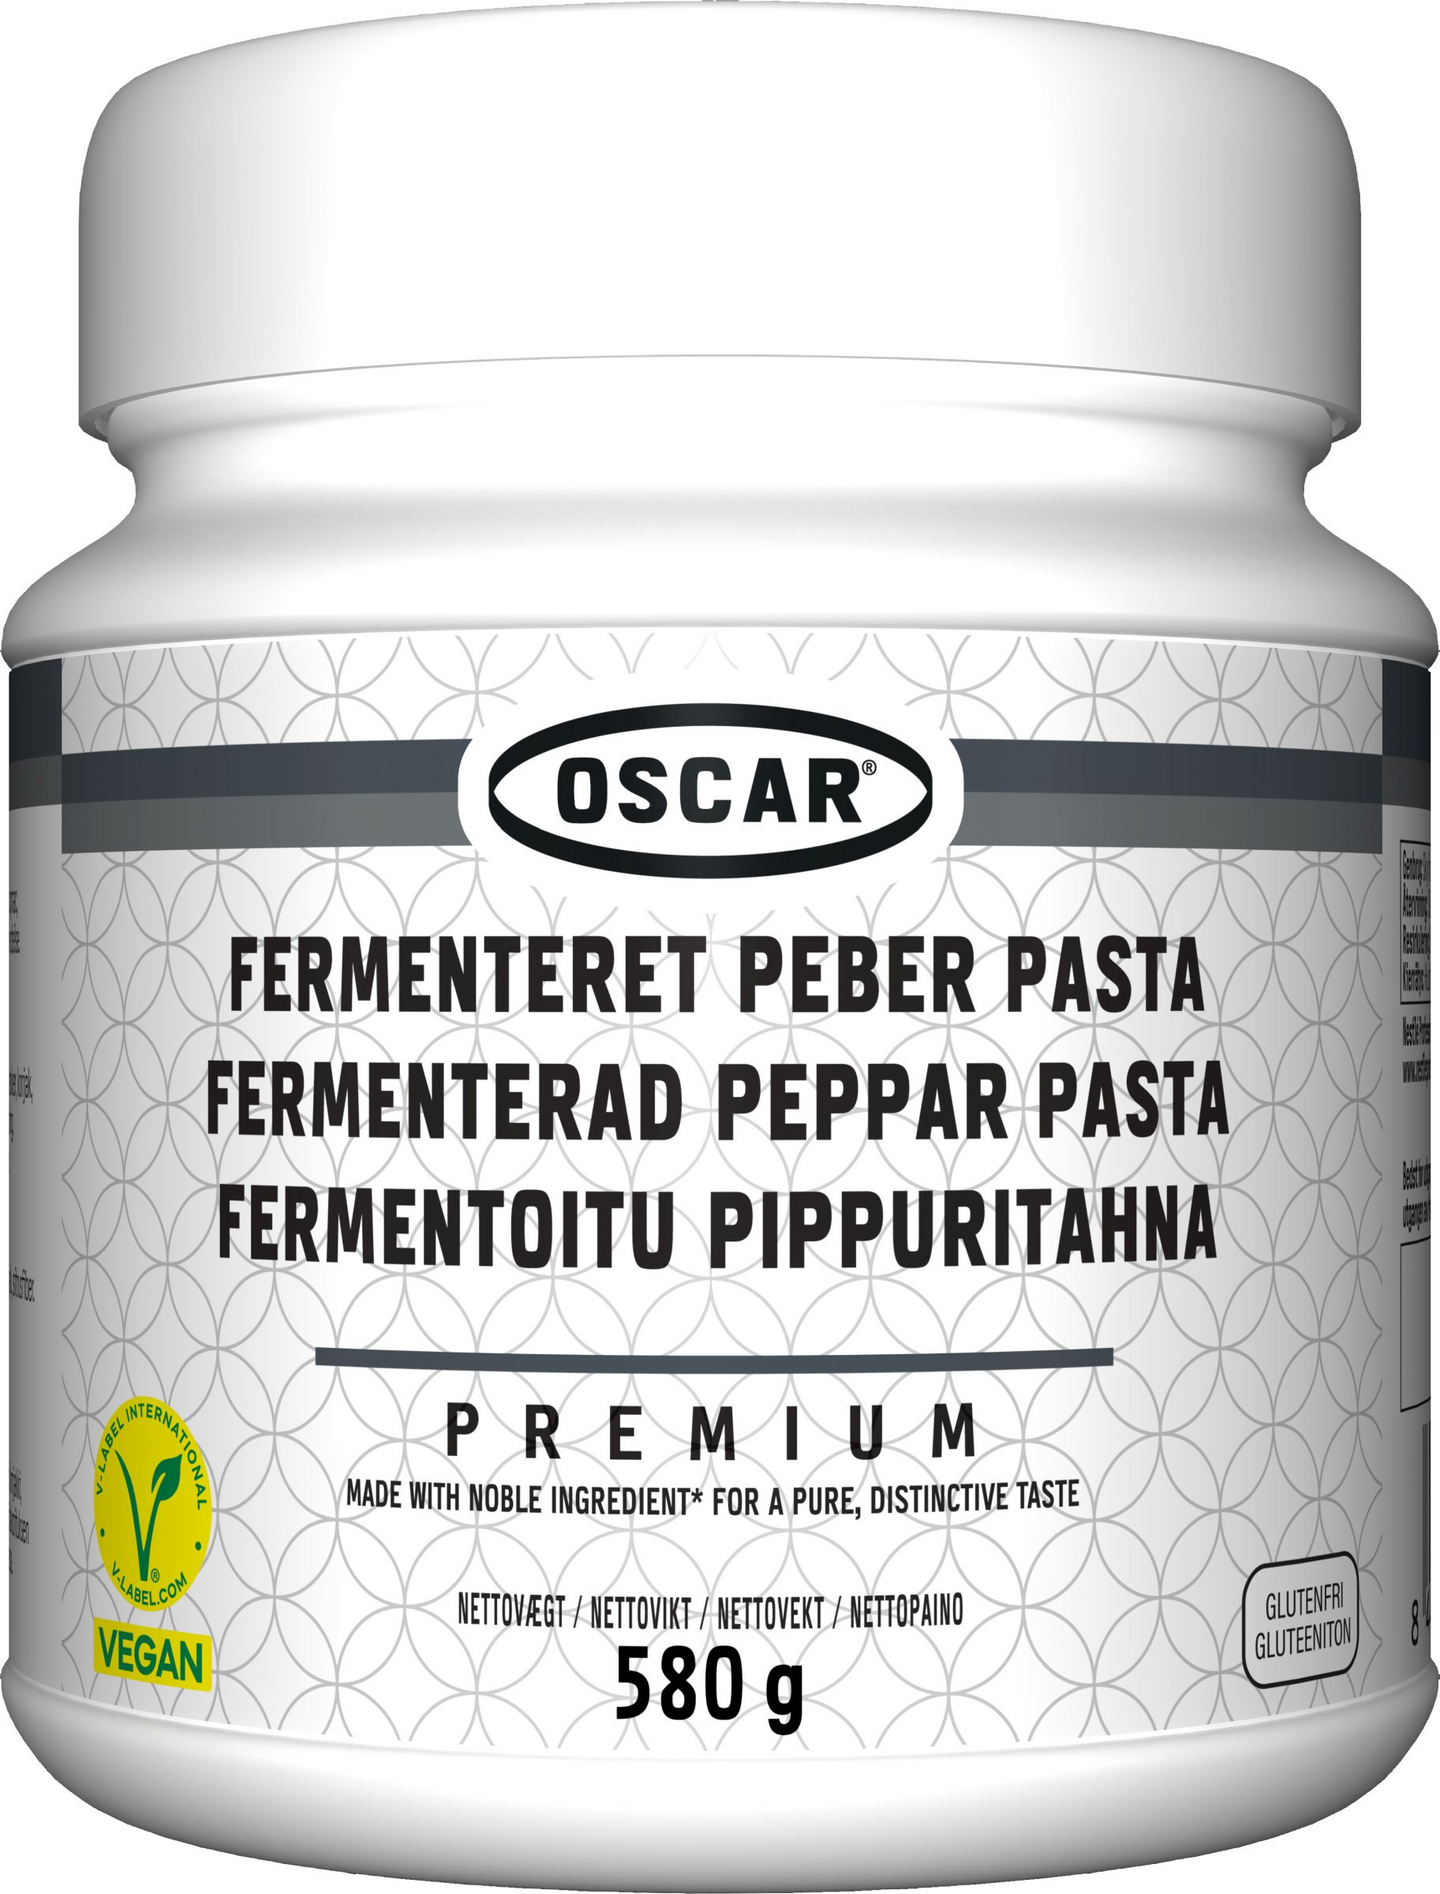 Oscar Premium fermentoitu pippuritahna 580g